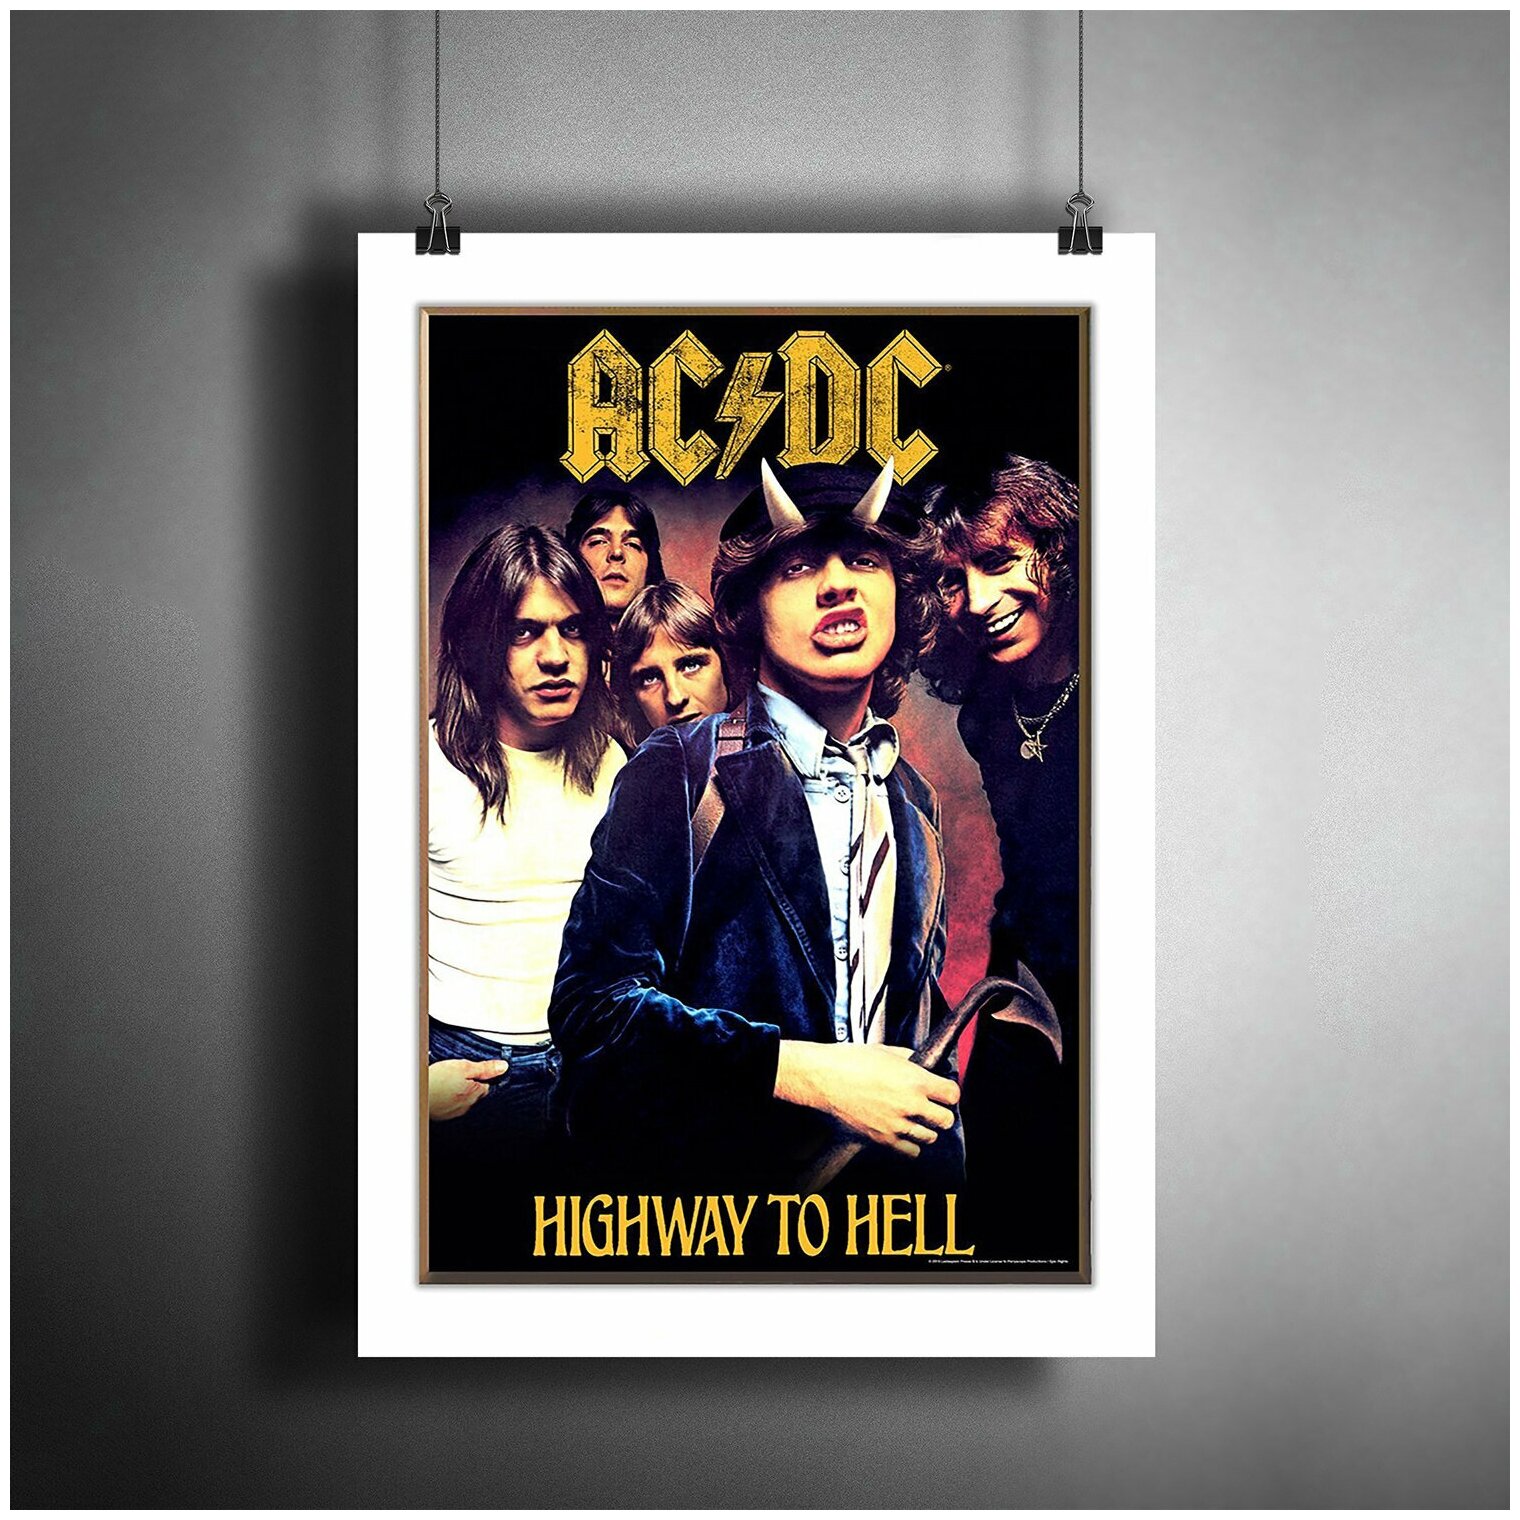 Постер плакат для интерьера "Музыка: Австралийская рок-группа AC/DC" / Декор дома, офиса, комнаты, квартиры A3 (297 x 420 мм)